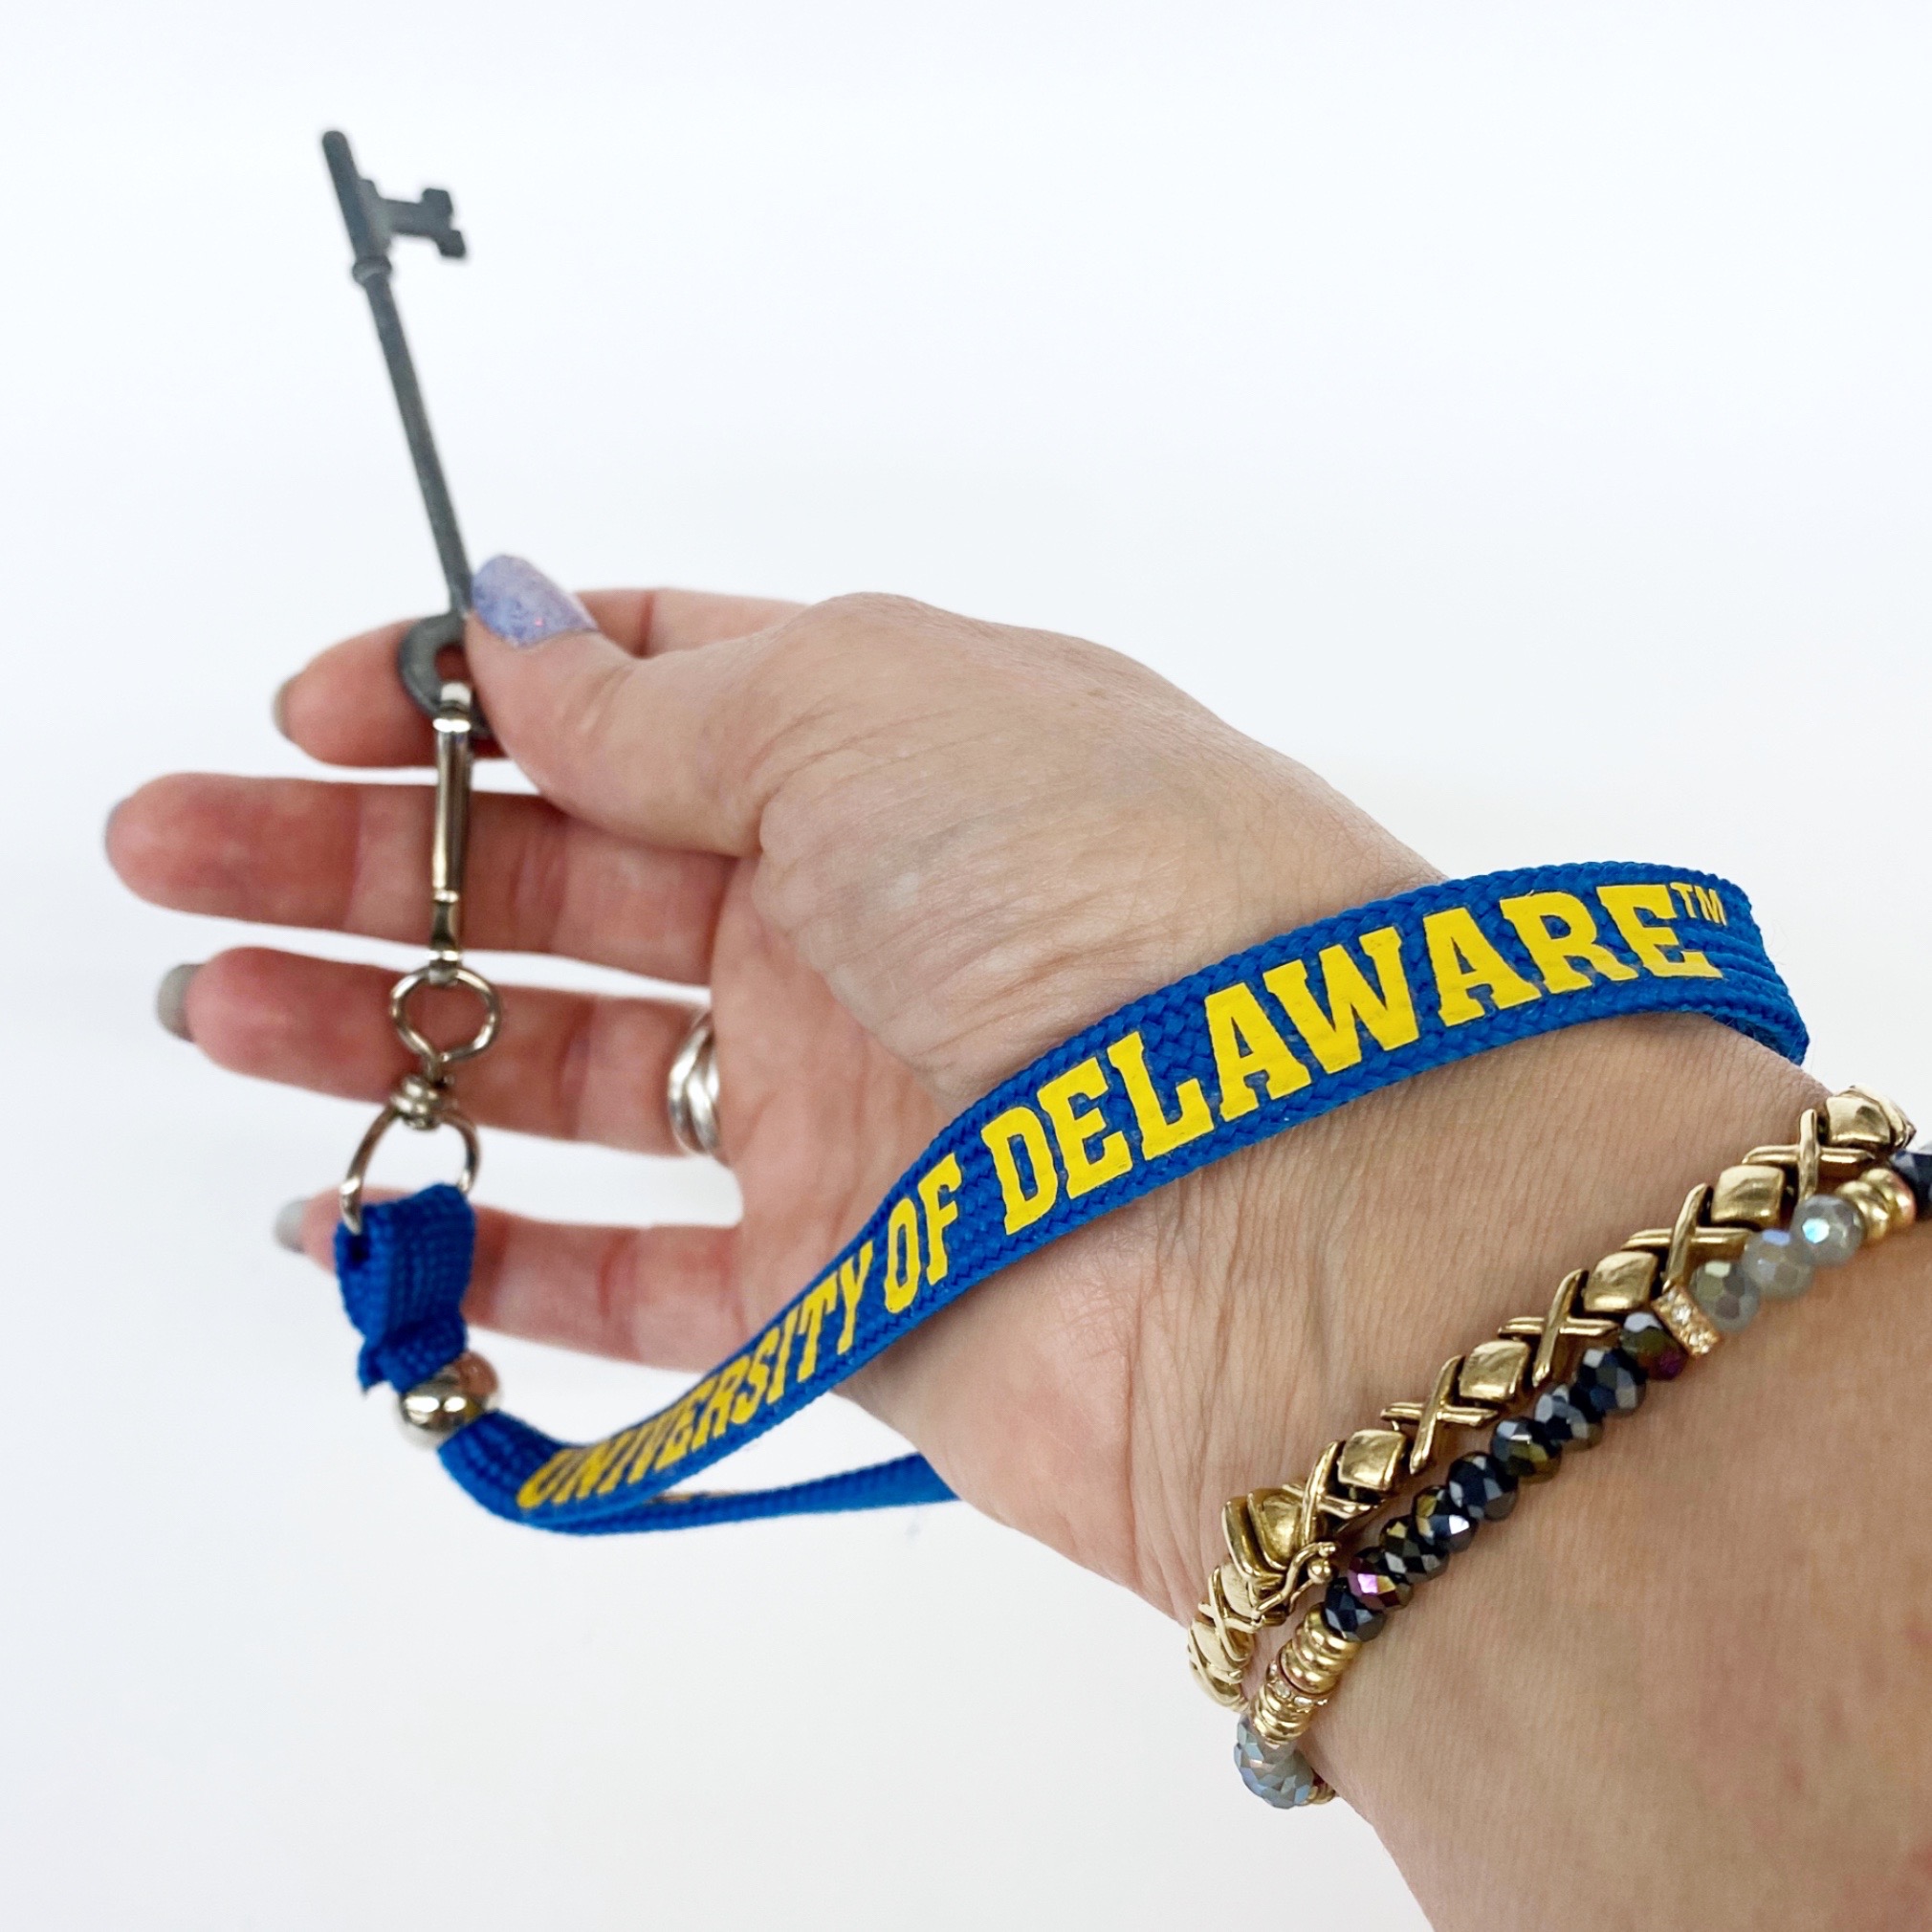 University of Delaware Silky Breakaway Key Chain Lanyard